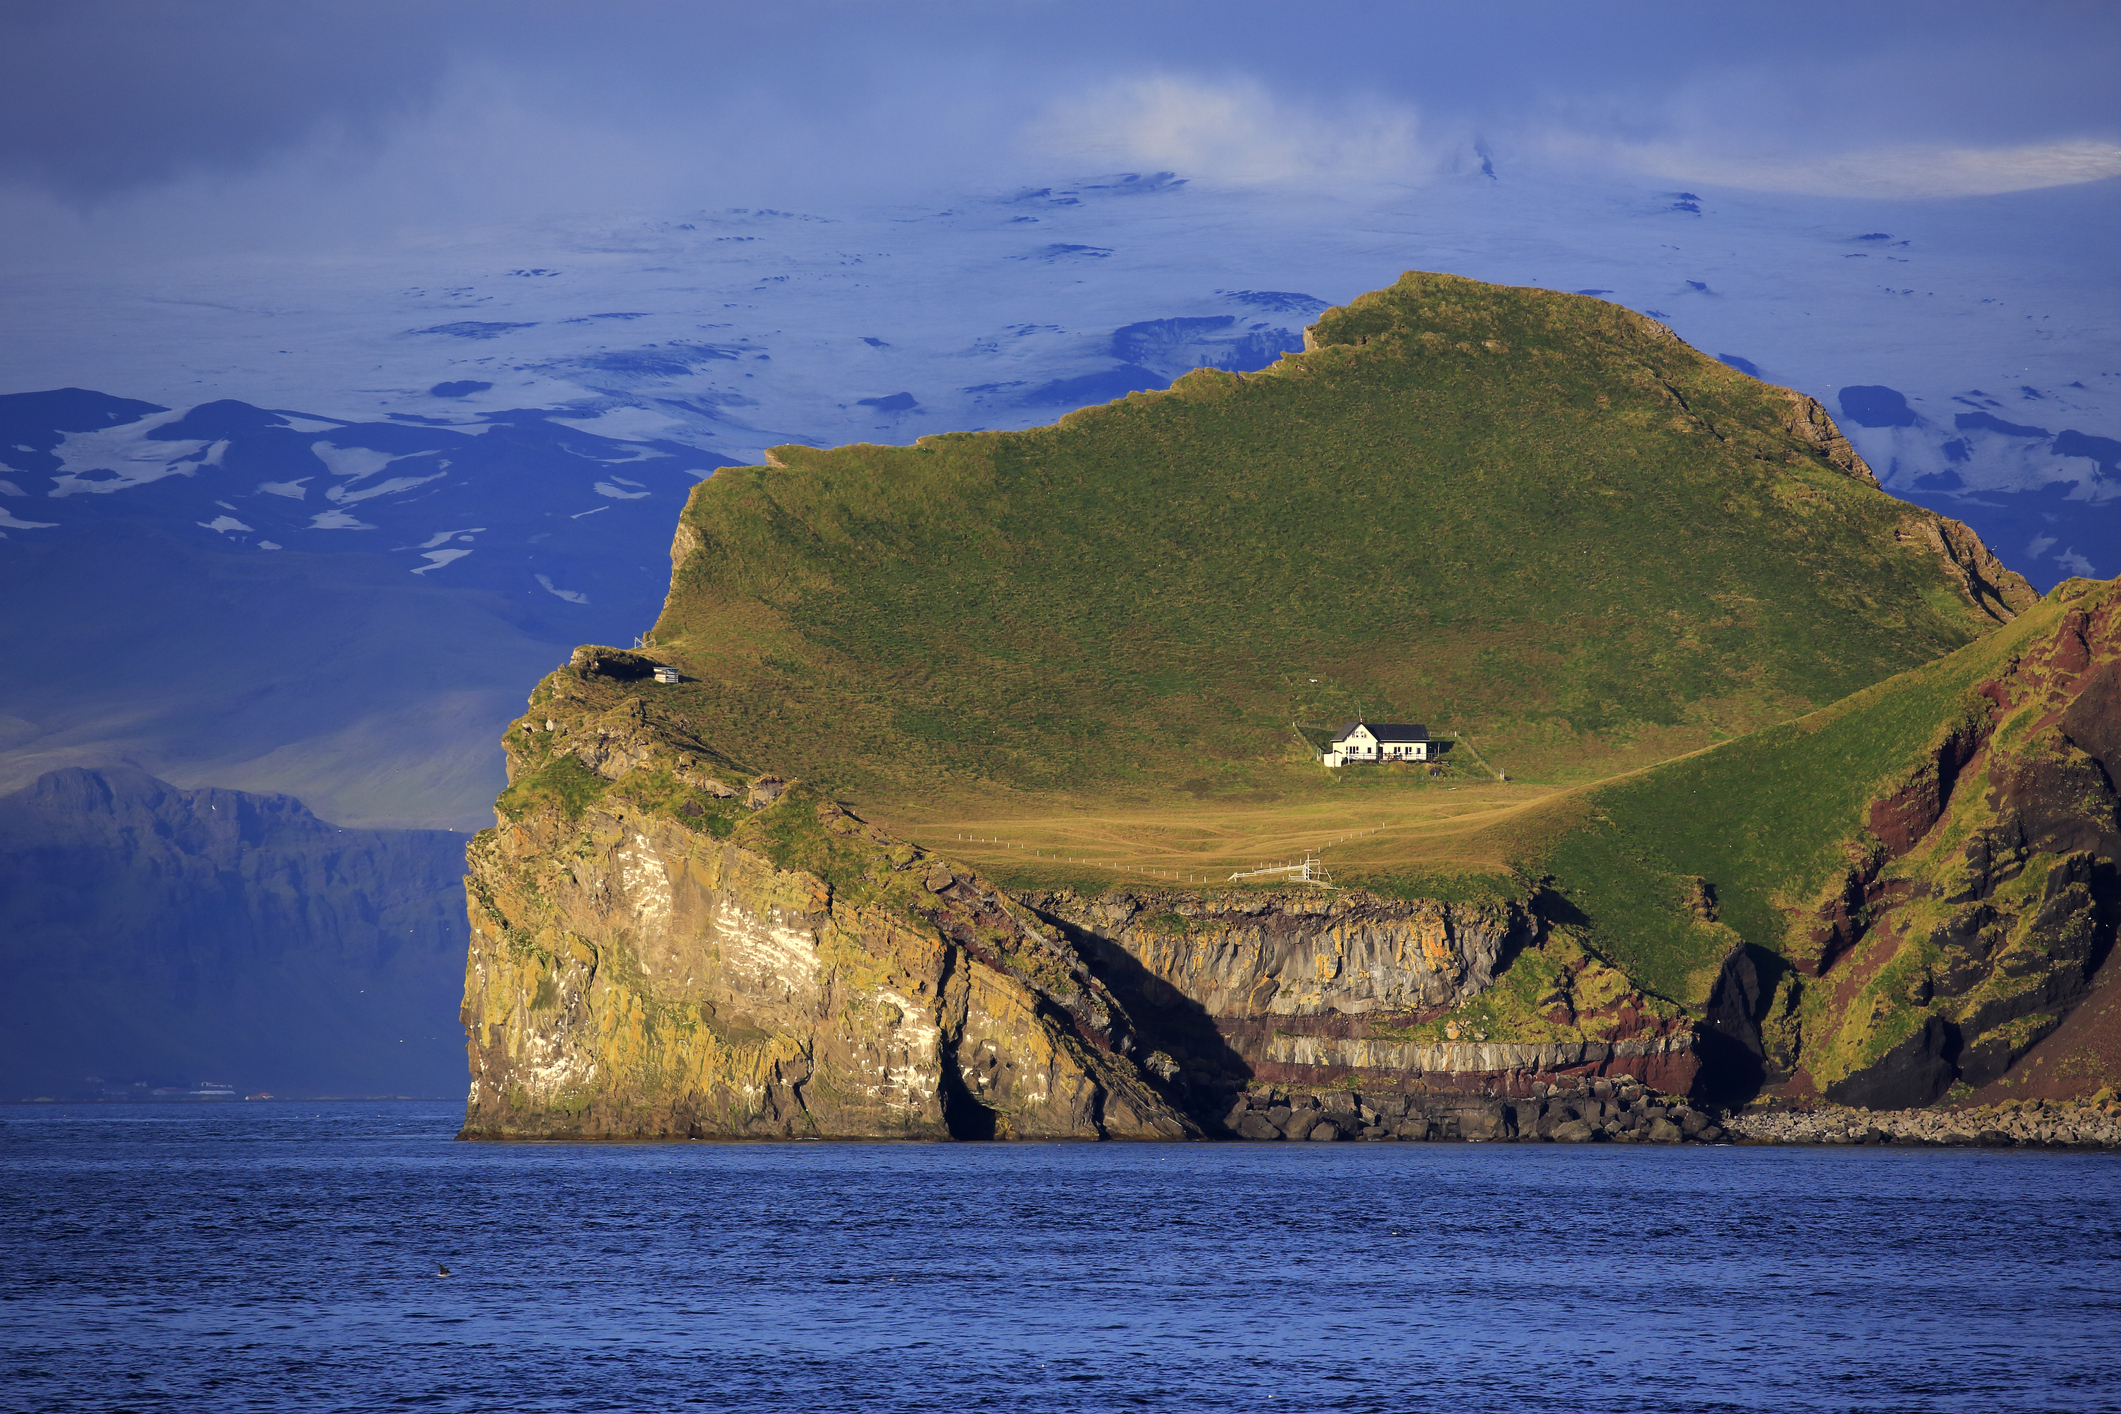 A lone house on a rocky, hilly landscape